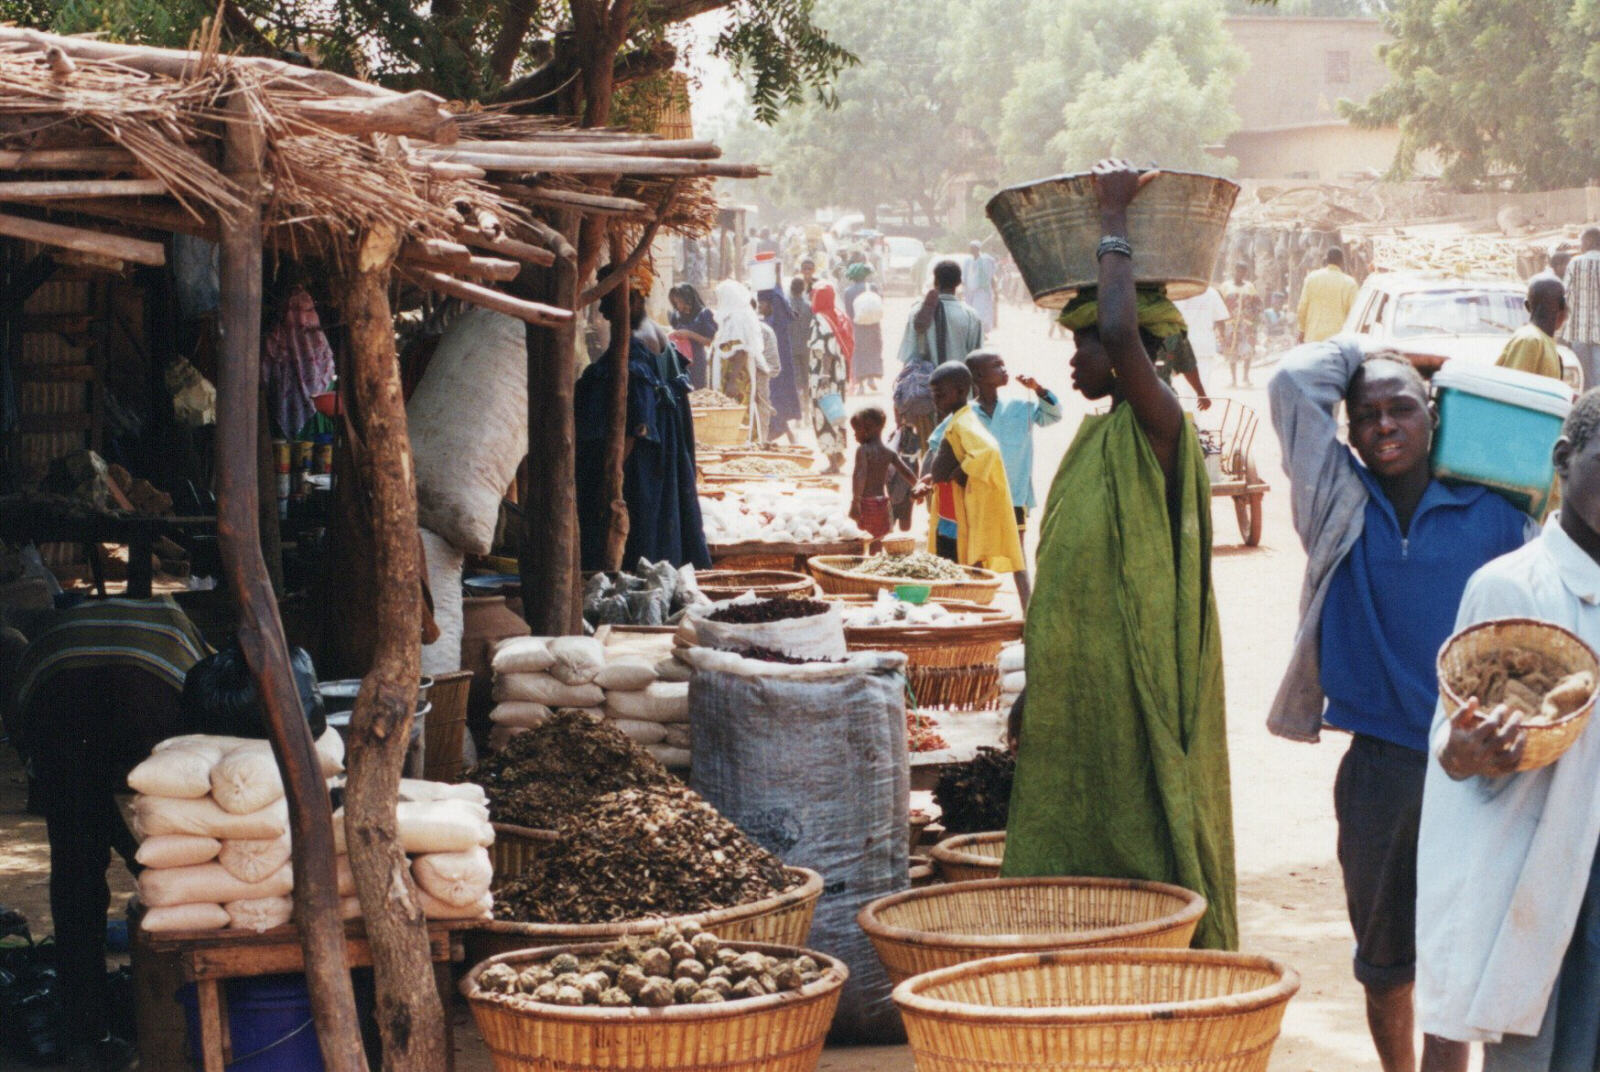 In the market at Mopti, Mali